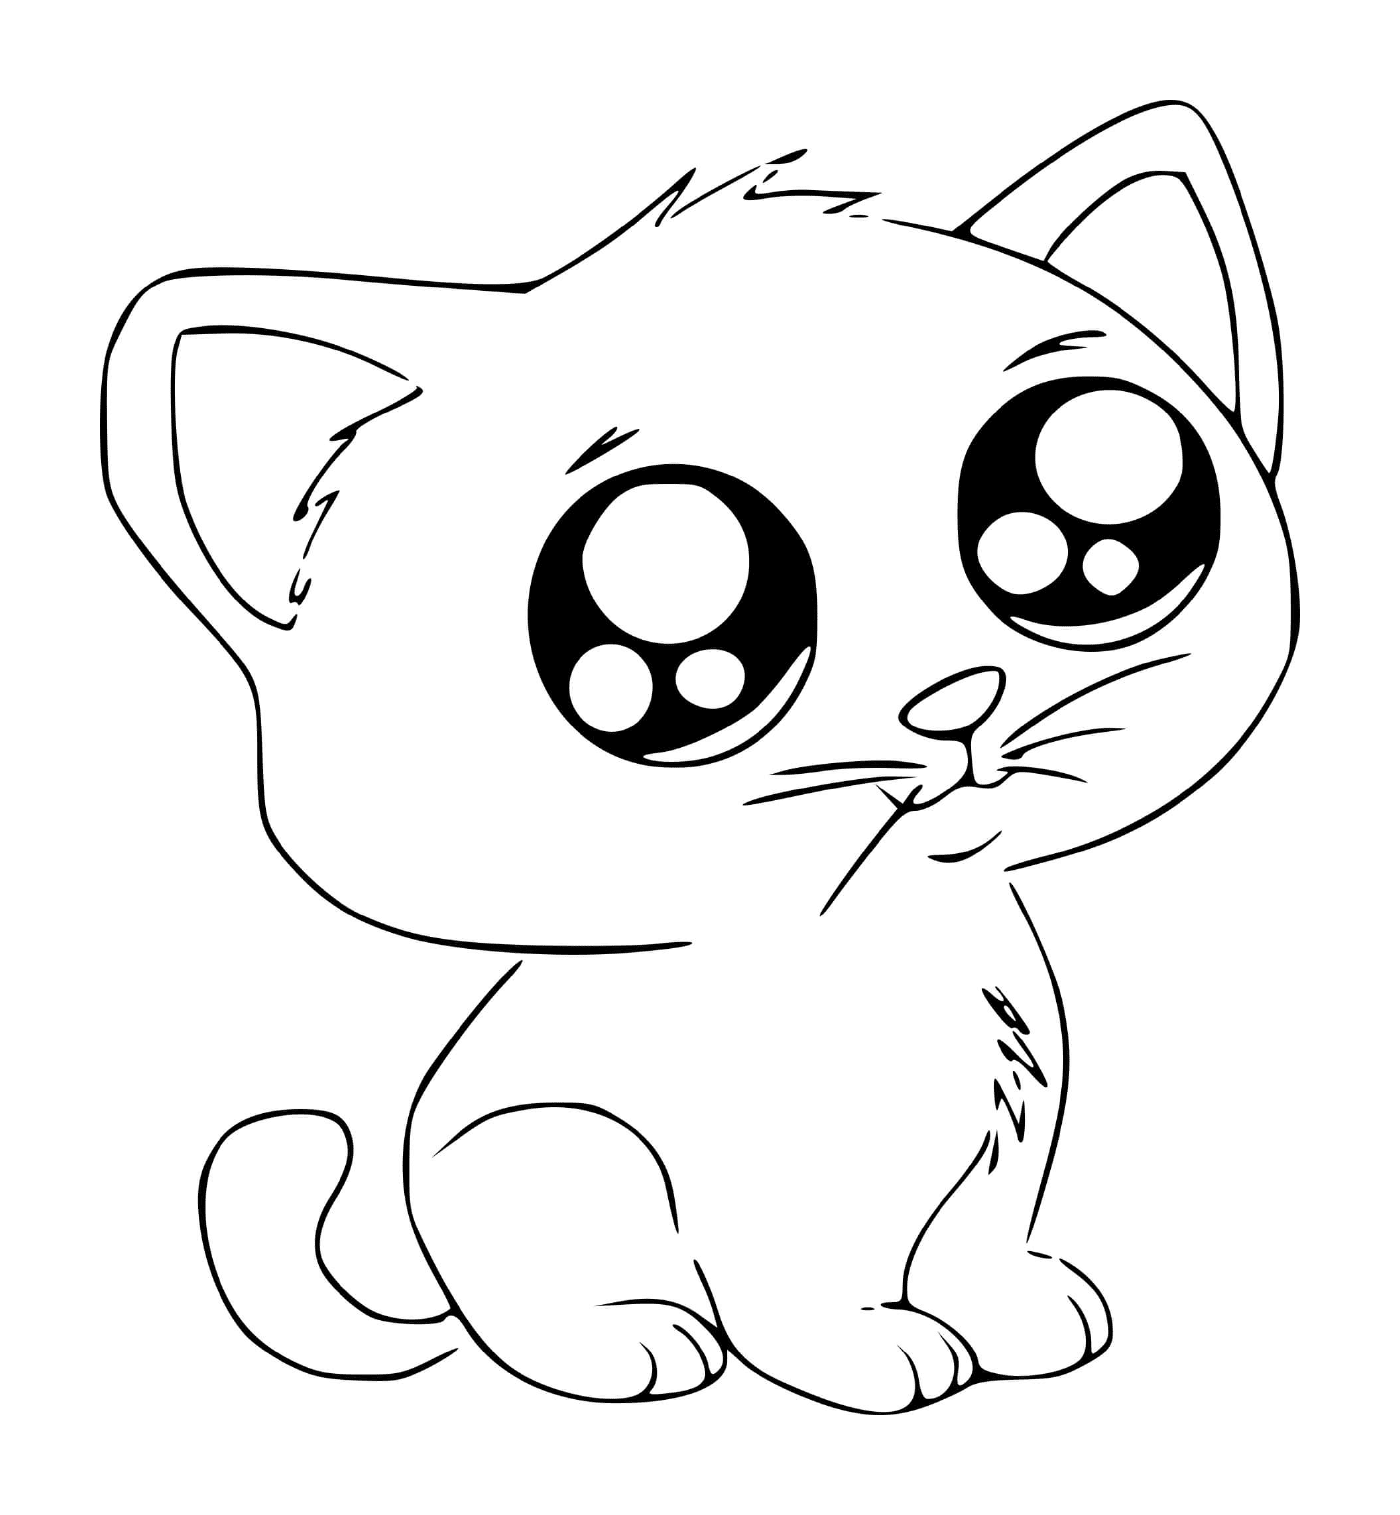  A cute kawaii manga cat 